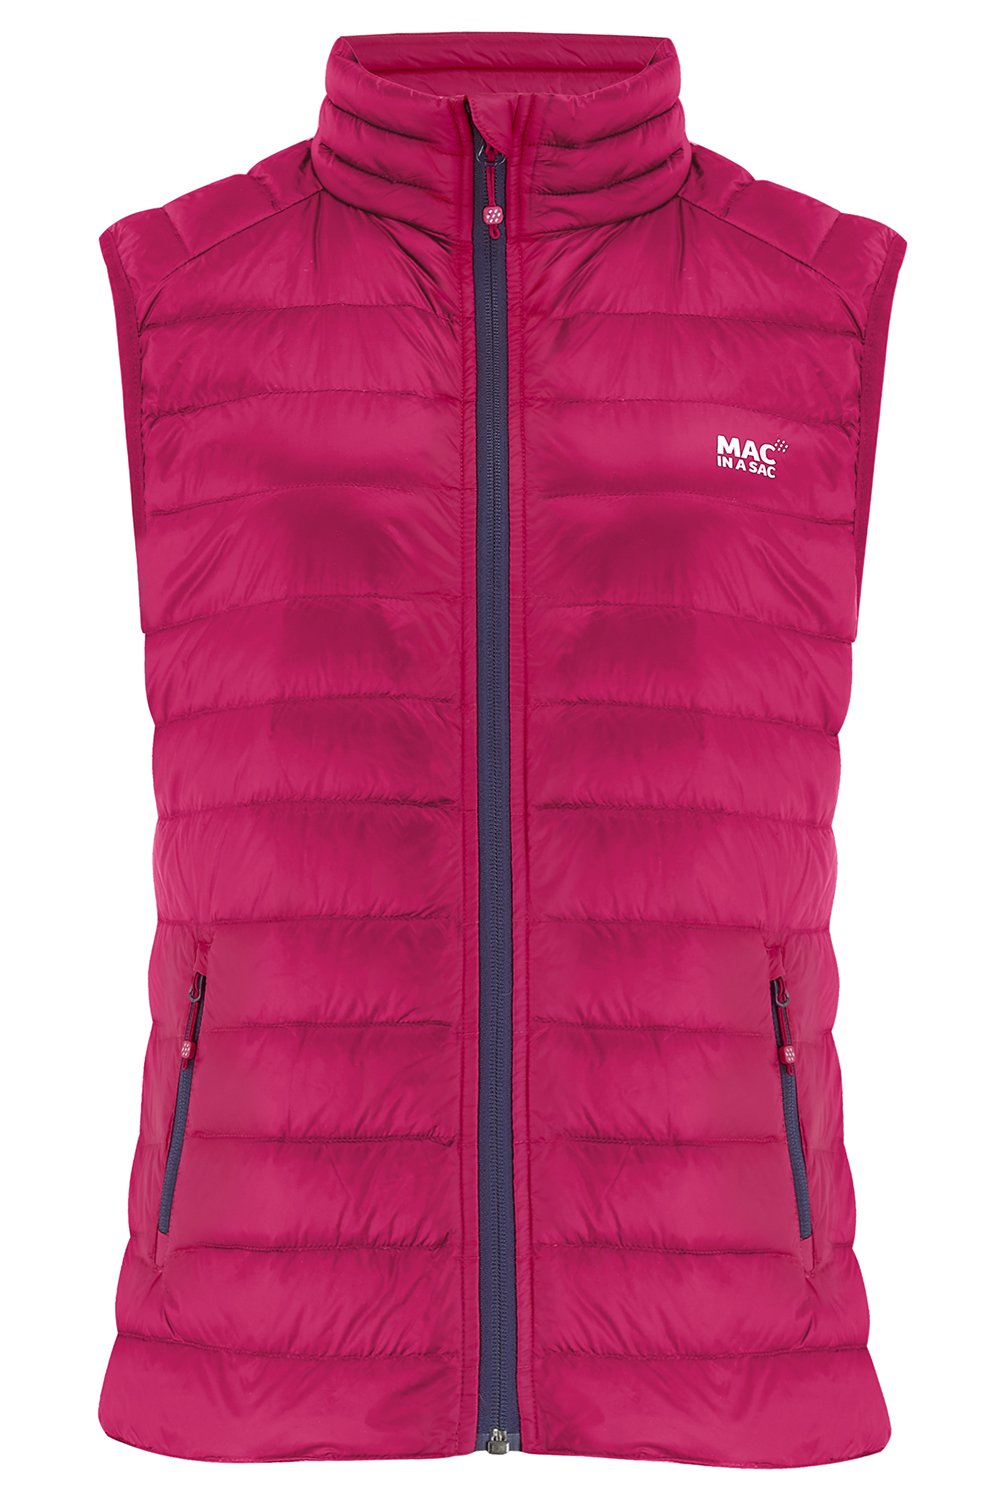 Alpine - Women's Packable Down Gilet - Pink